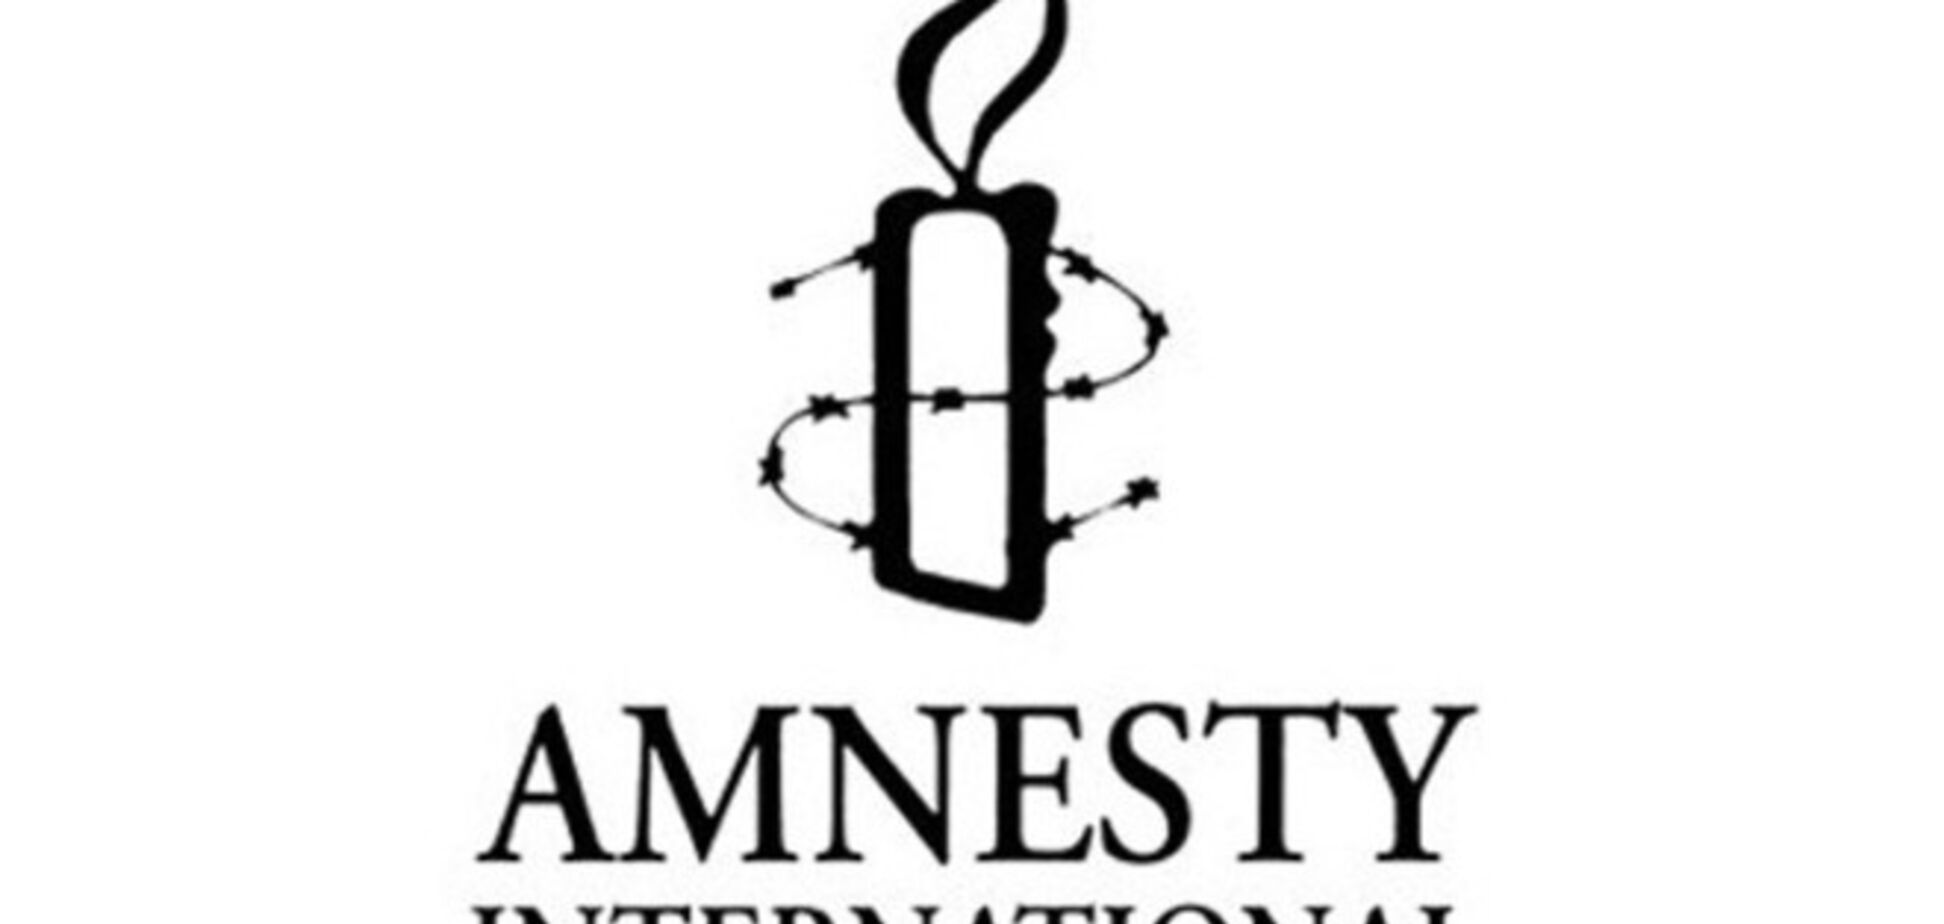 Amnesty International: реакция мира на конфликт в Украине позорна